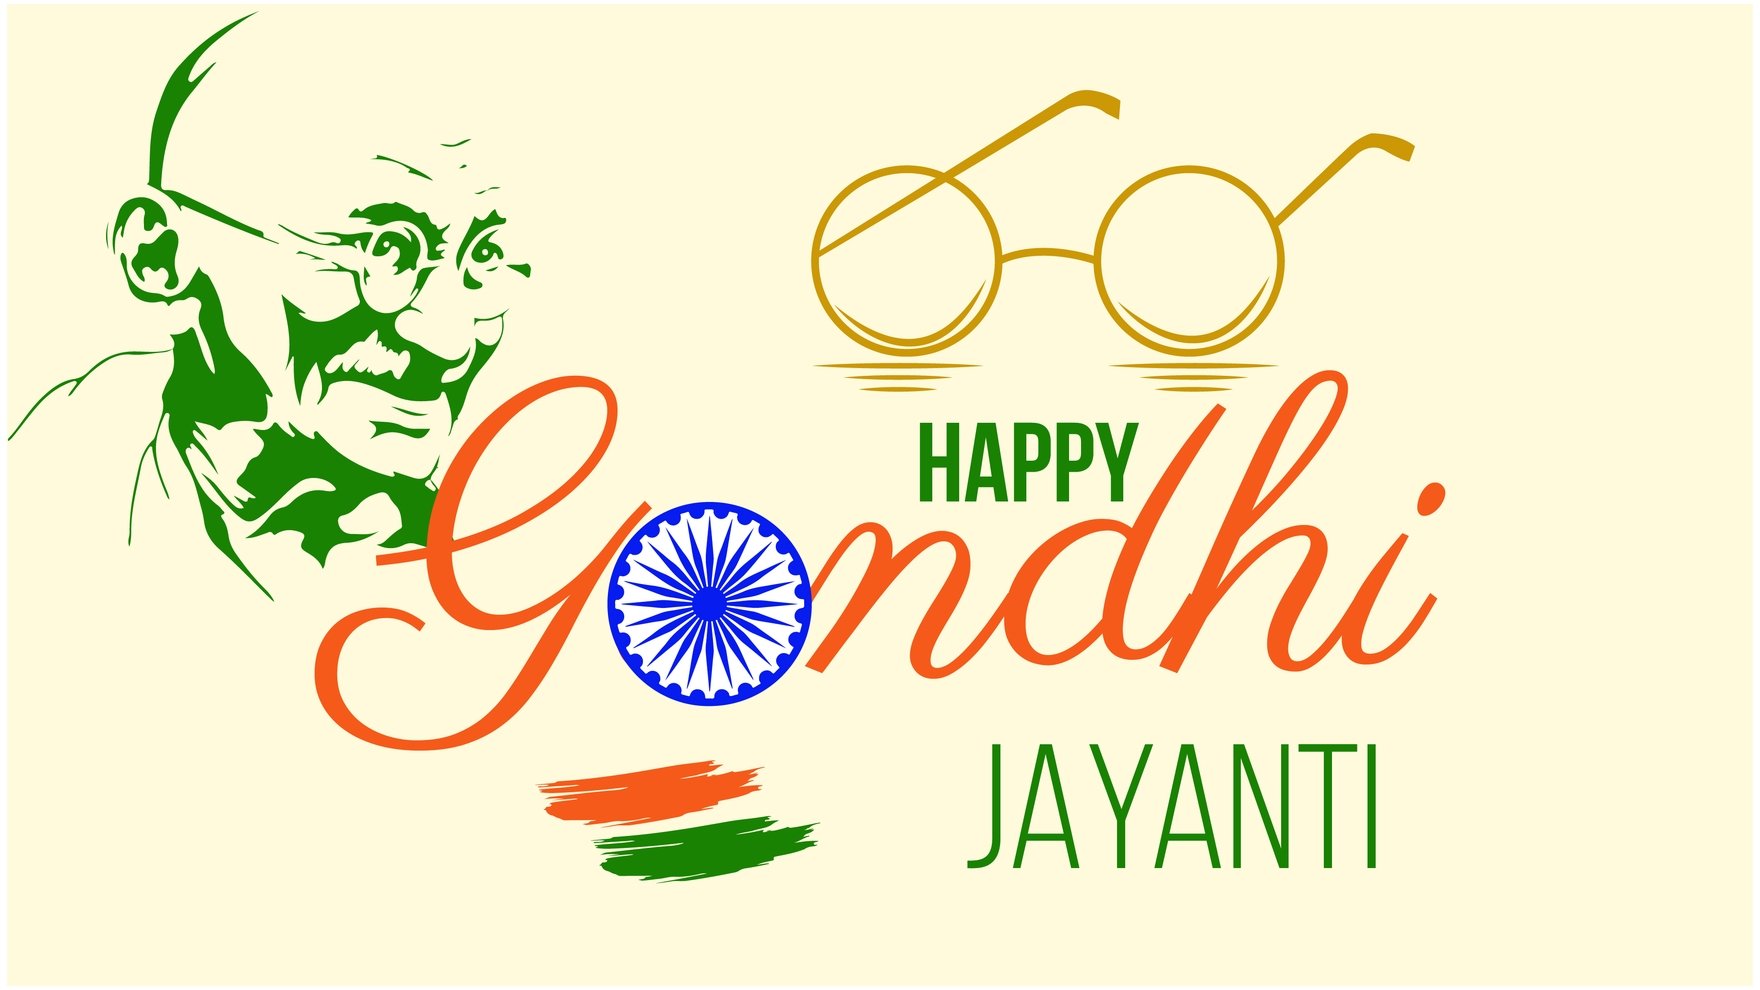 Happy Gandhi Jayanti Background